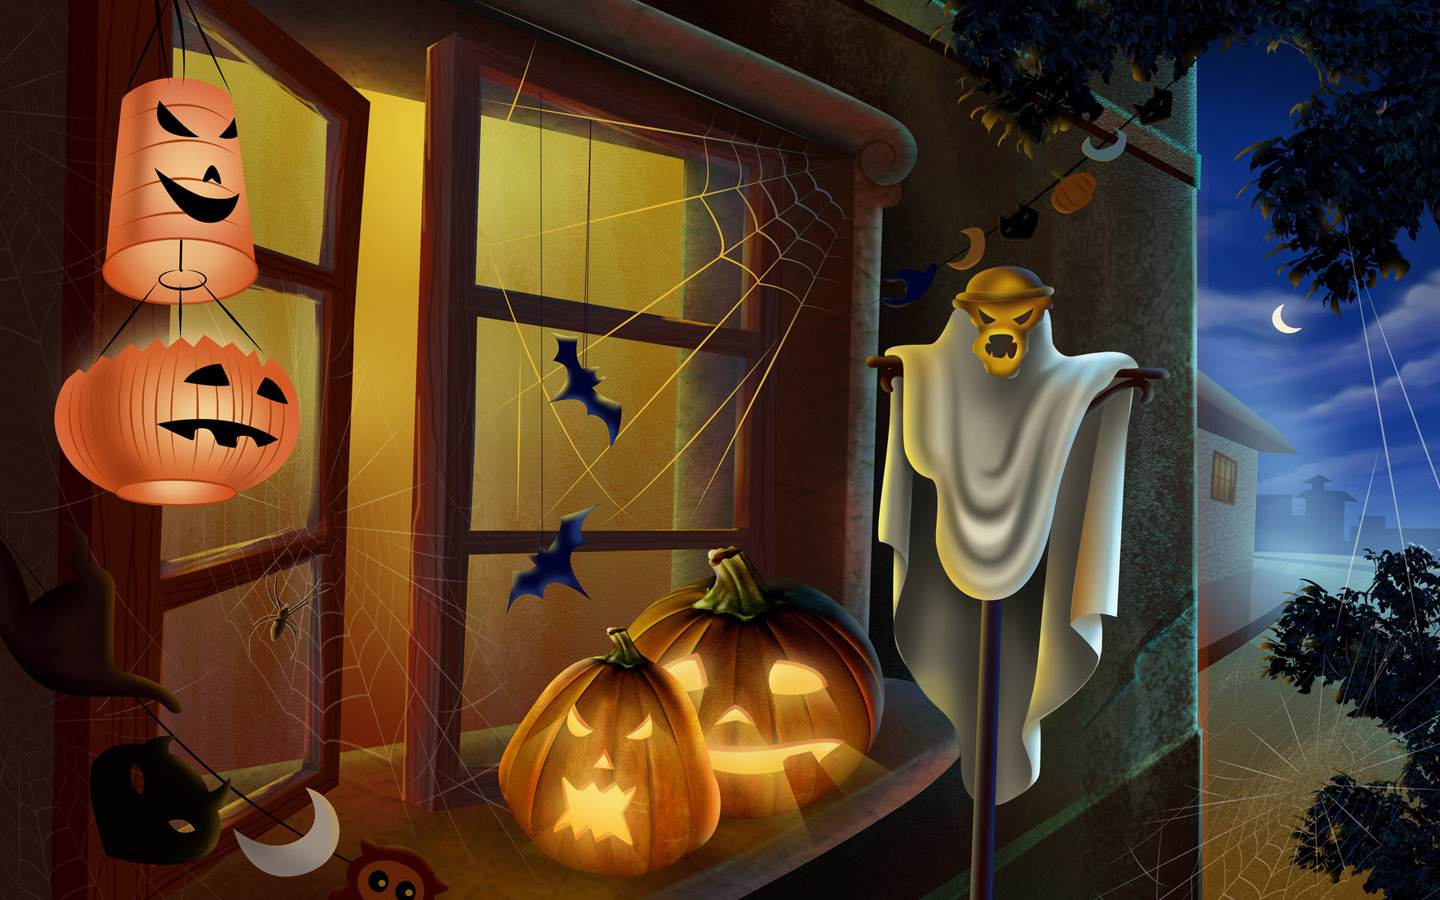 http://3.bp.blogspot.com/-x8HK1xpL0G8/UHbqhpFp3ZI/AAAAAAAAHRw/VH_x5p4bvoU/s1600/Halloween+Wallpaper+Background+001.jpg